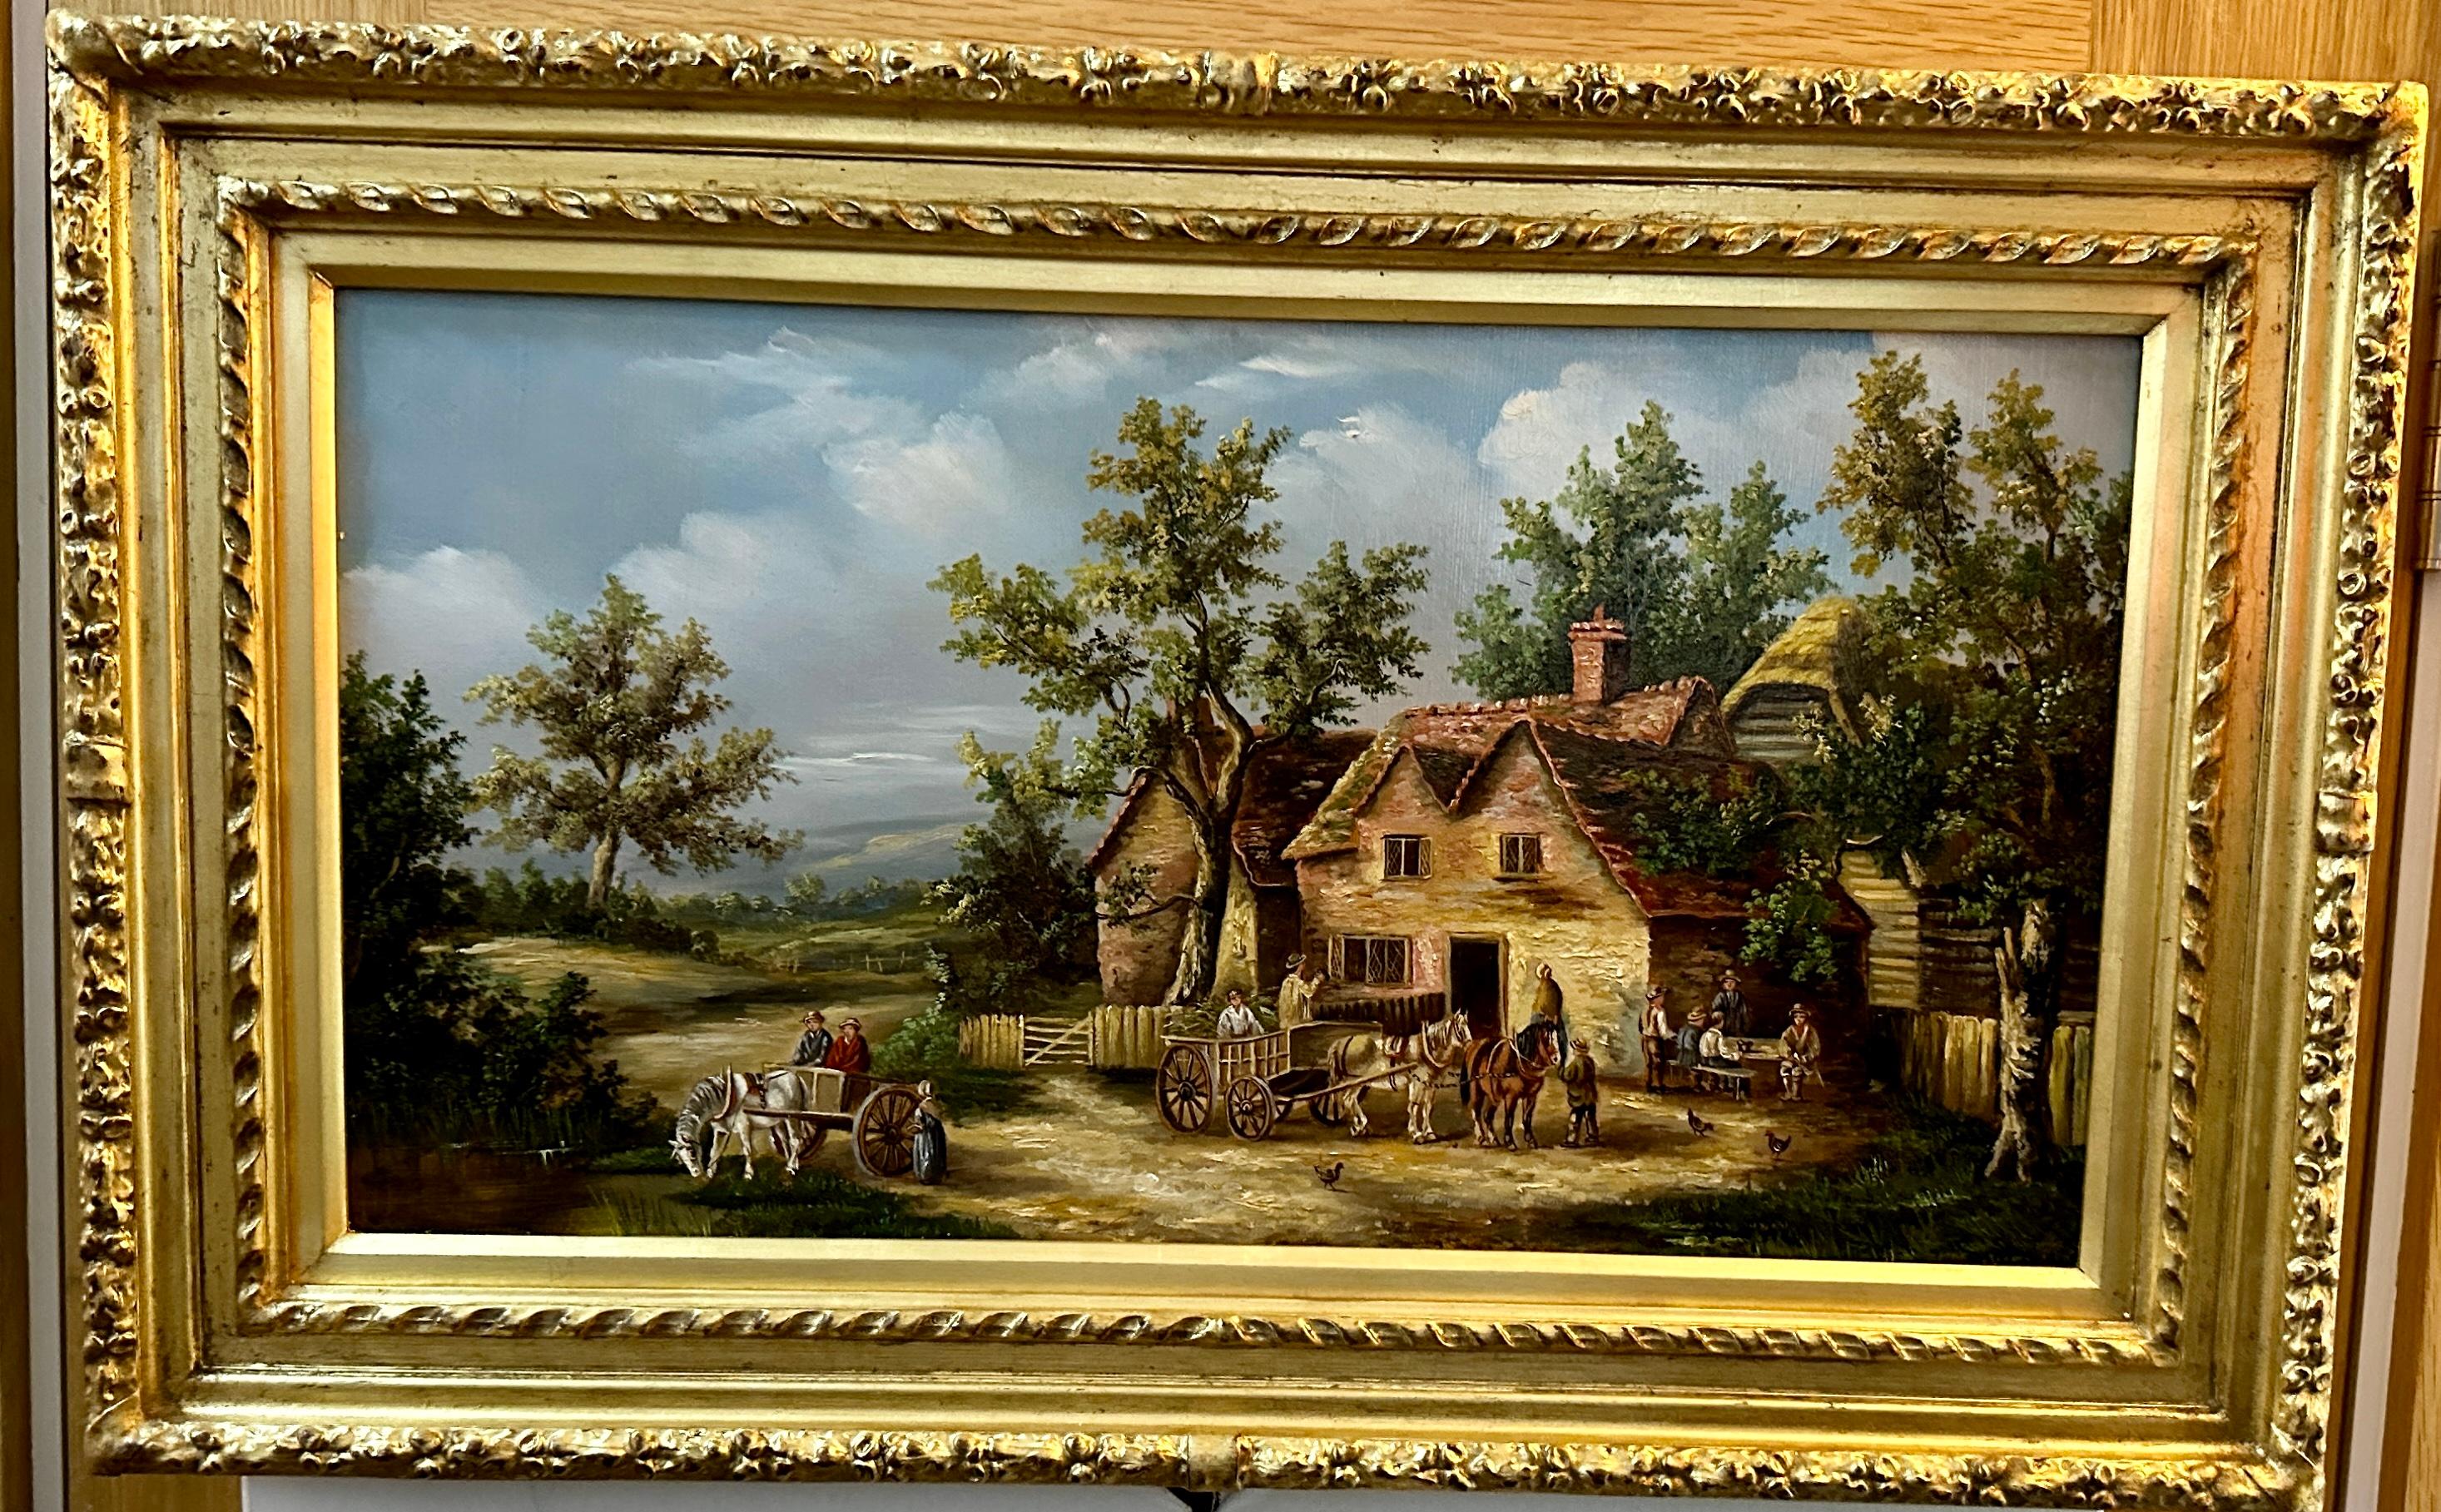 Englische Dorfszene aus dem 19. Jahrhundert mit Häusern, Pferdelandschaft und Menschen